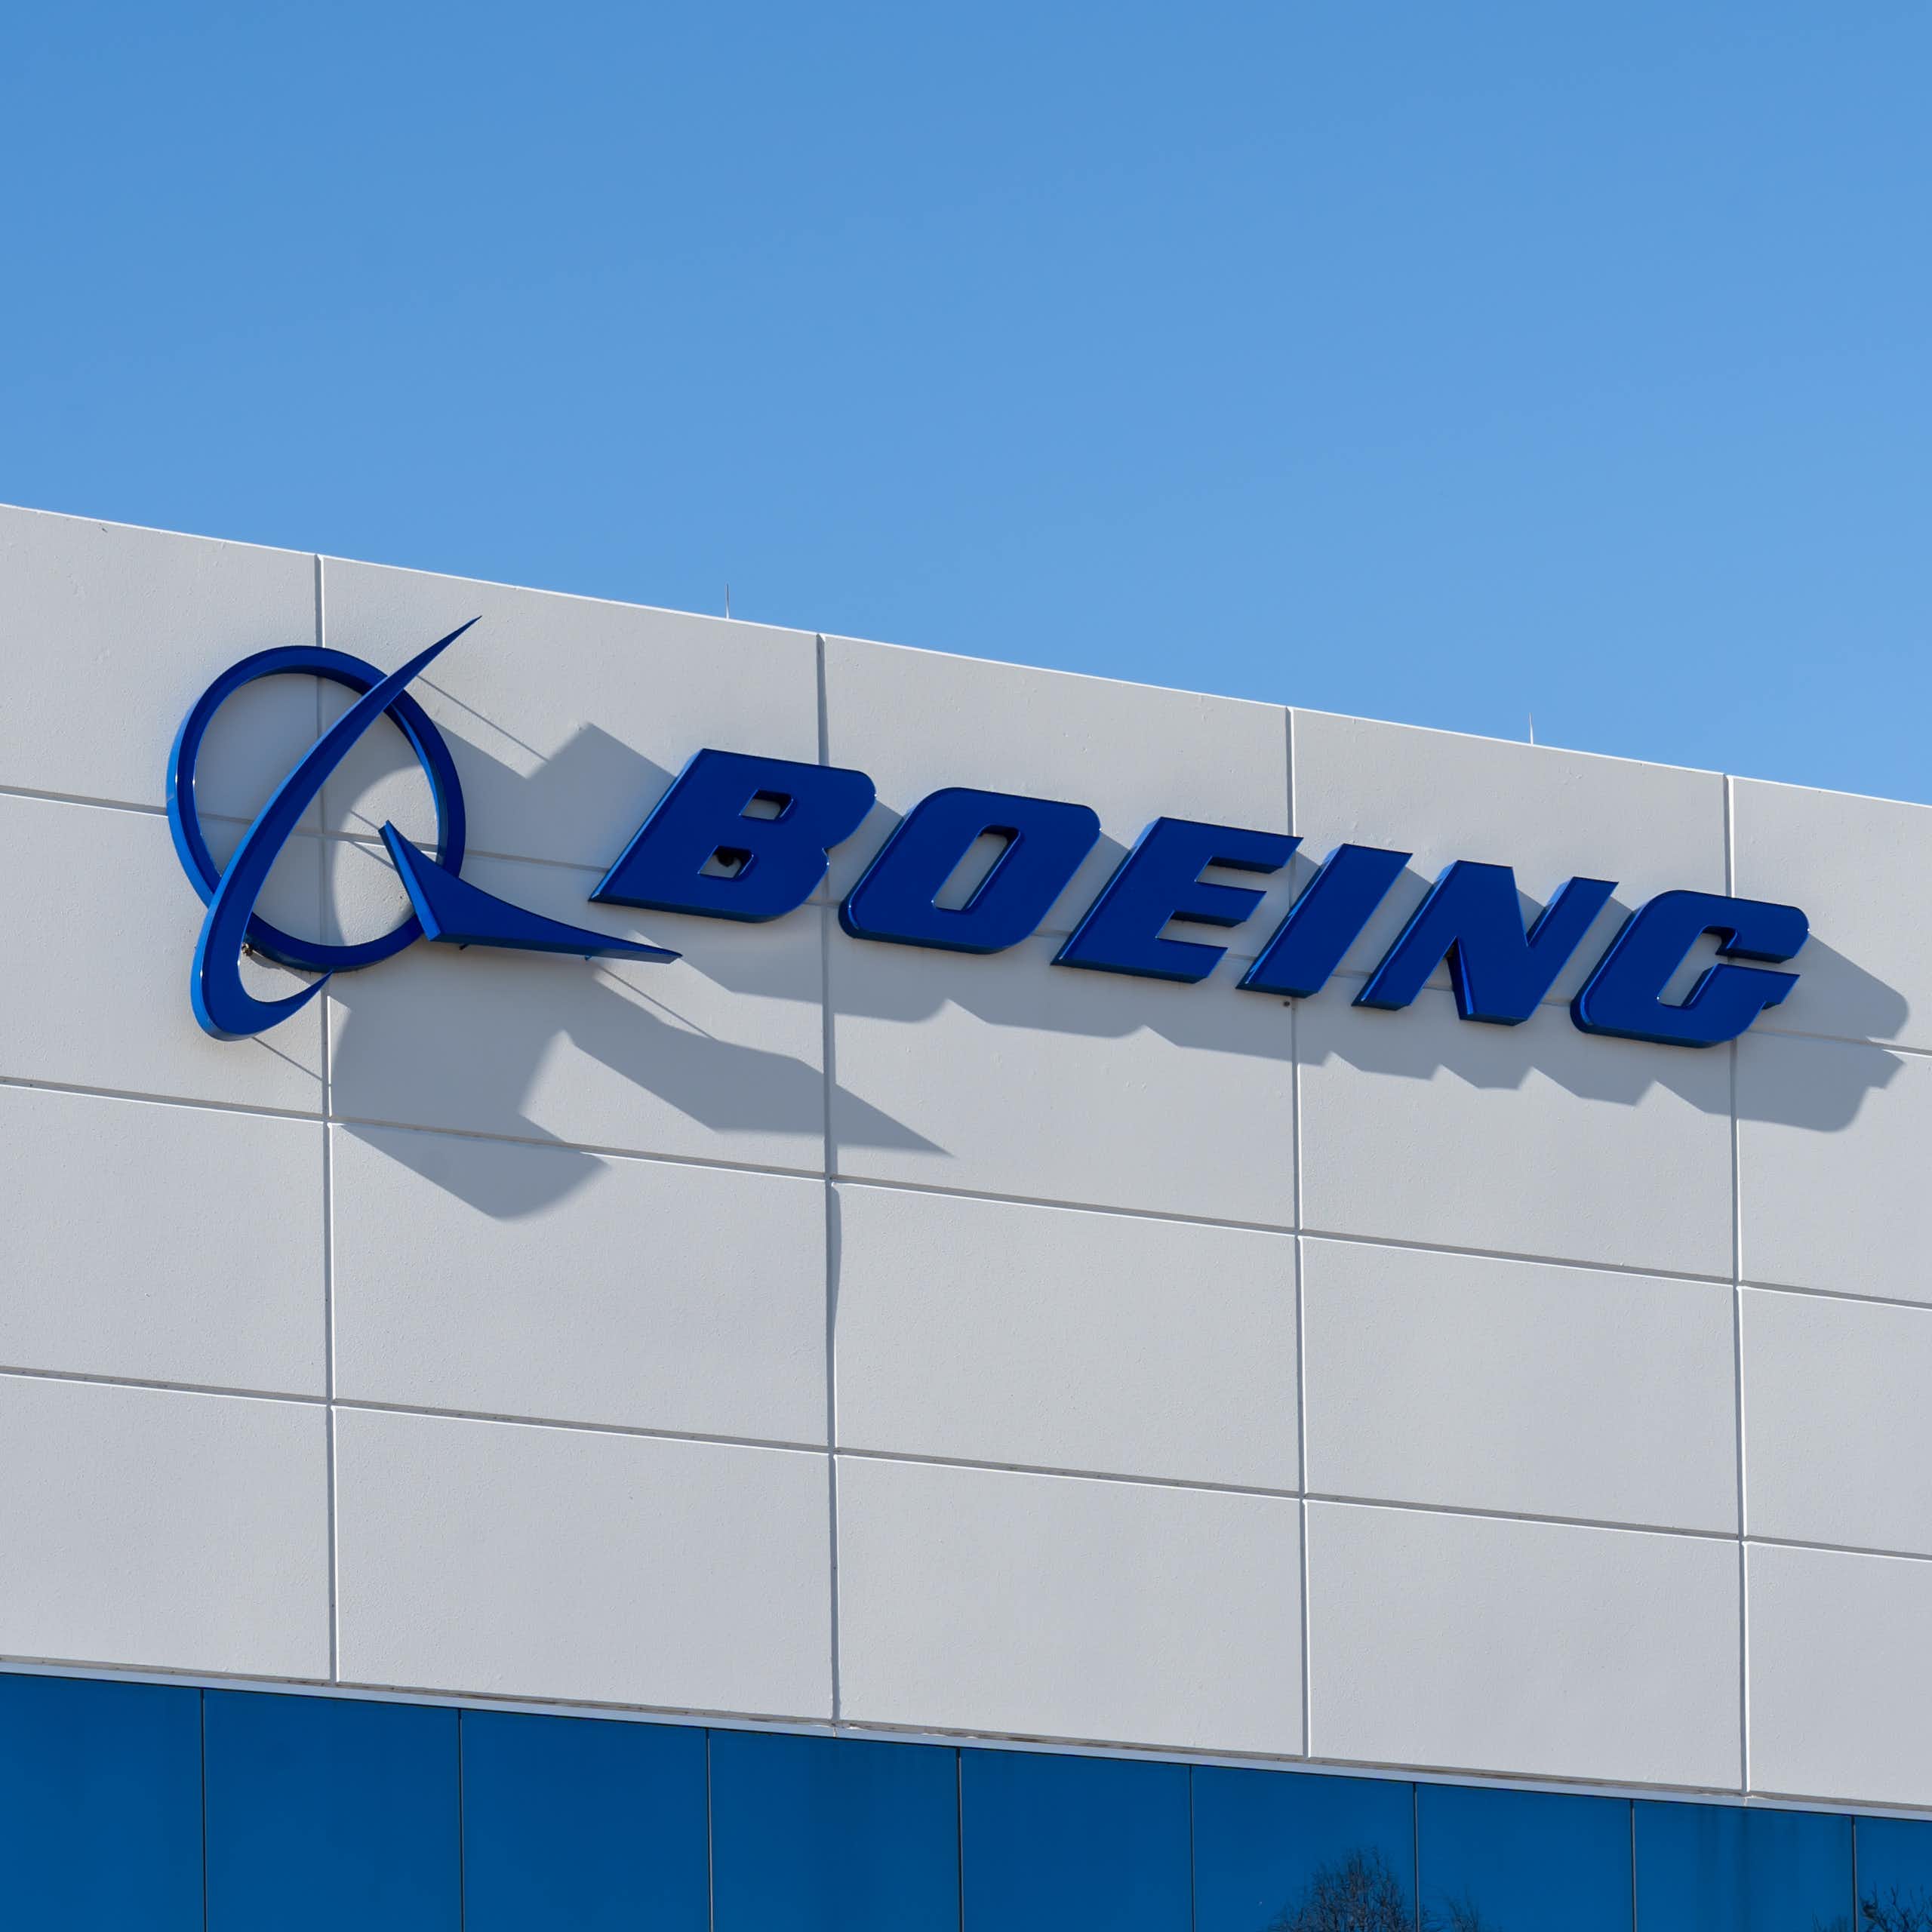 Un bâtiment dont la façade porte l'inscription "Boeing".